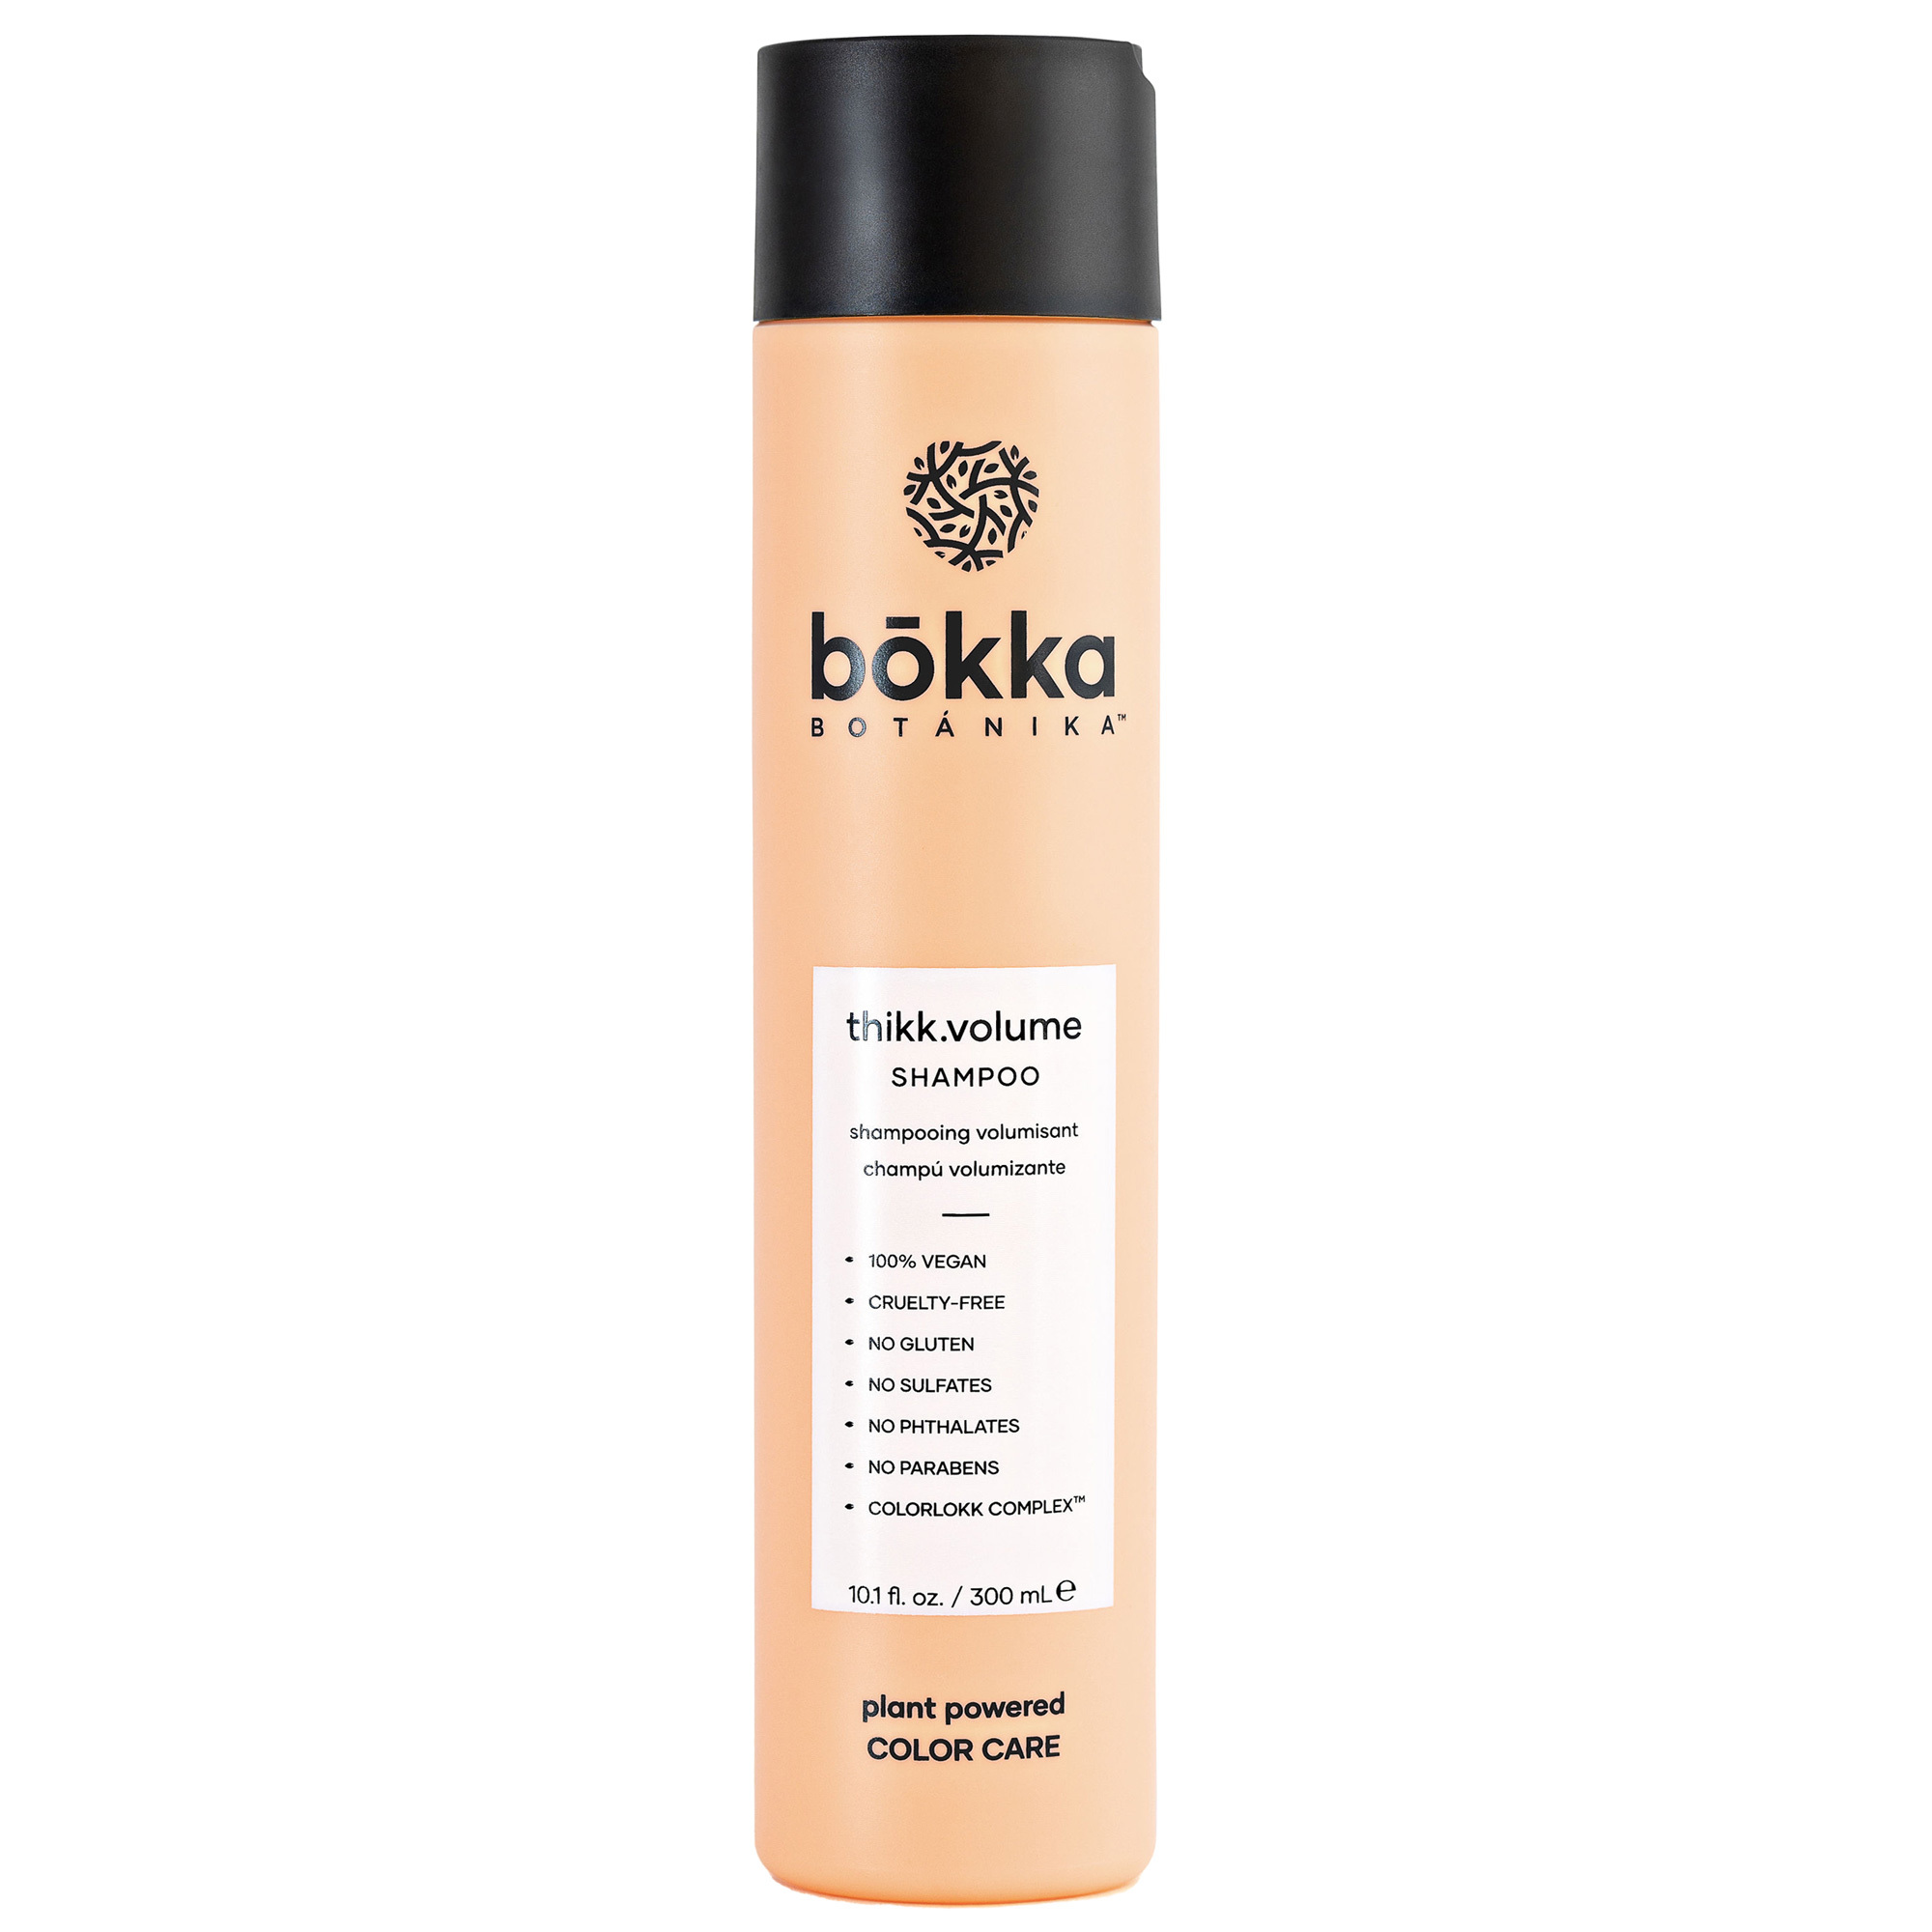 bokka BOTANIKA Thikk.Volume Shampoo